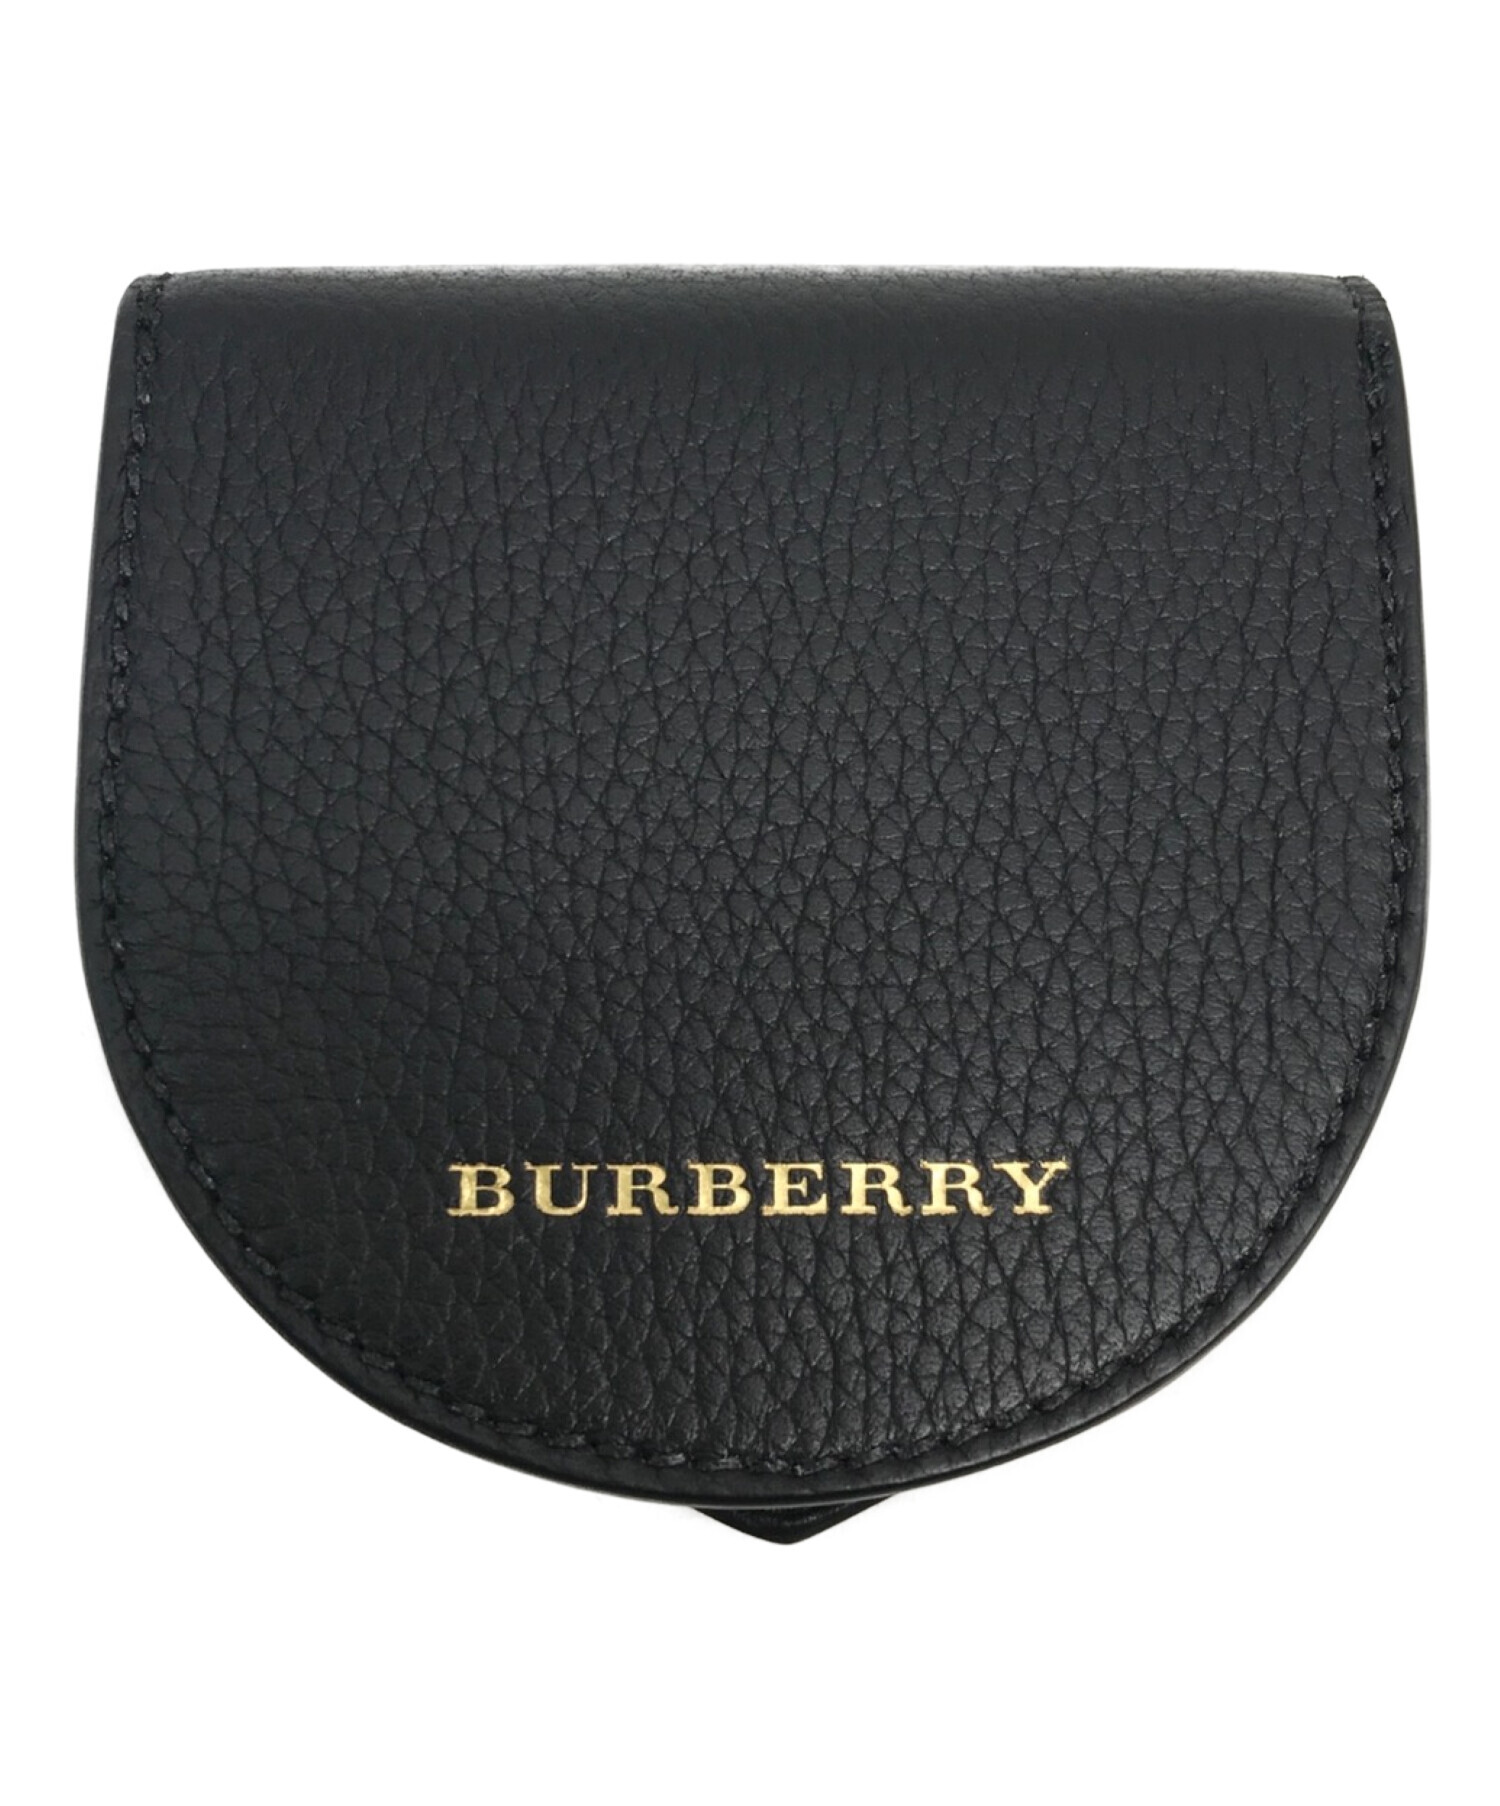 中古・古着通販】BURBERRY (バーバリー) 蹄型コインケース ブラック